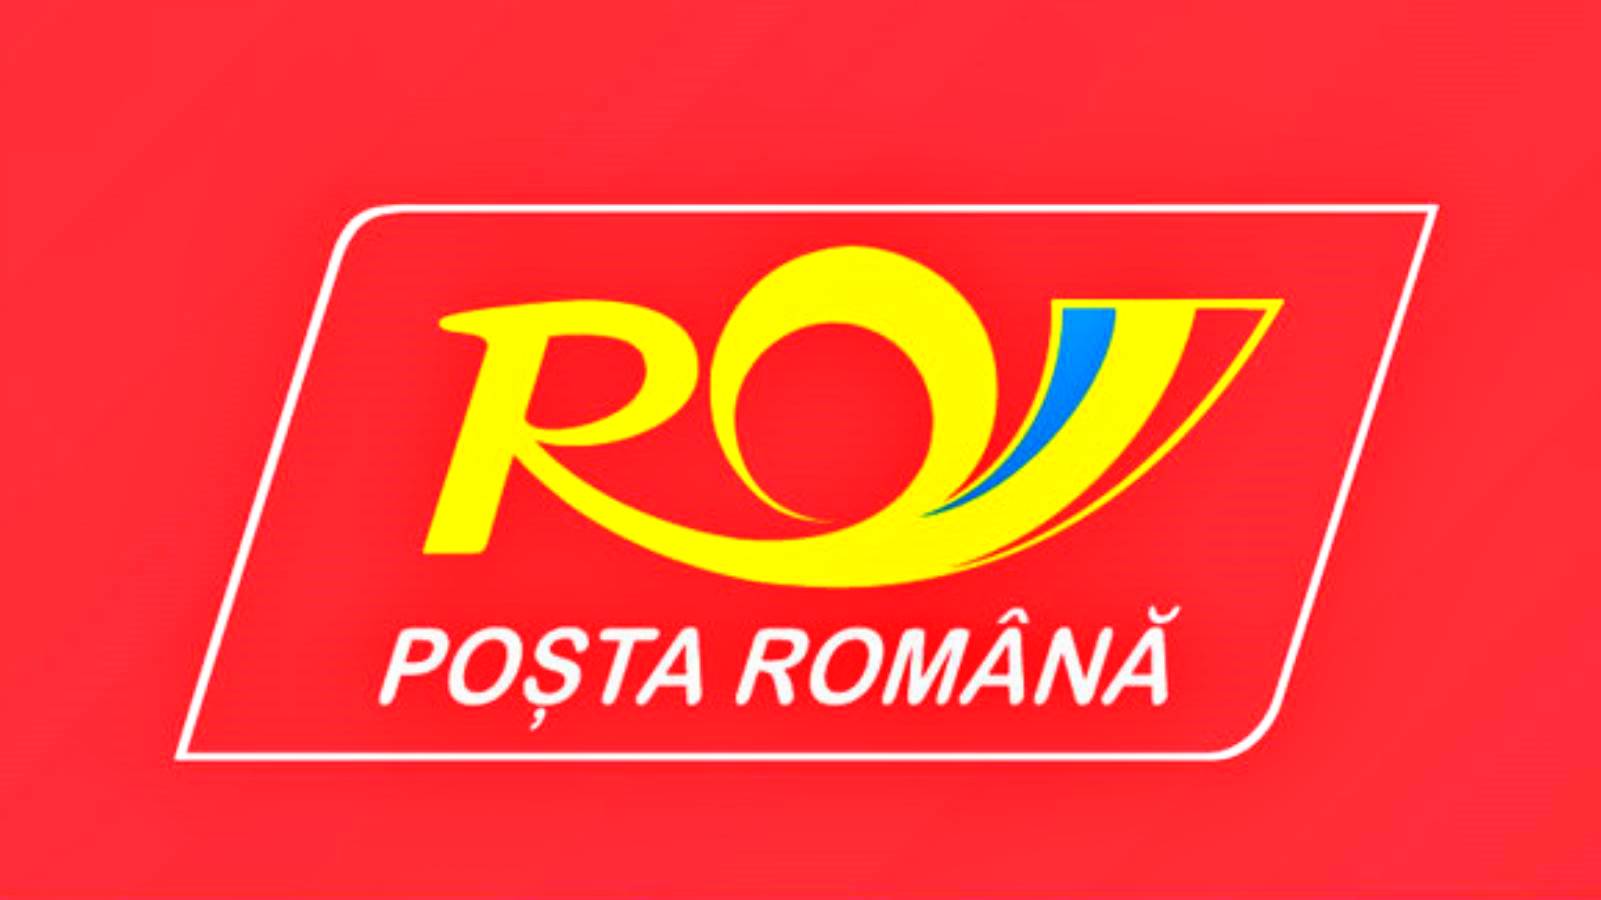 Roemeense post bezorgt geld verzonden via online postmandaat